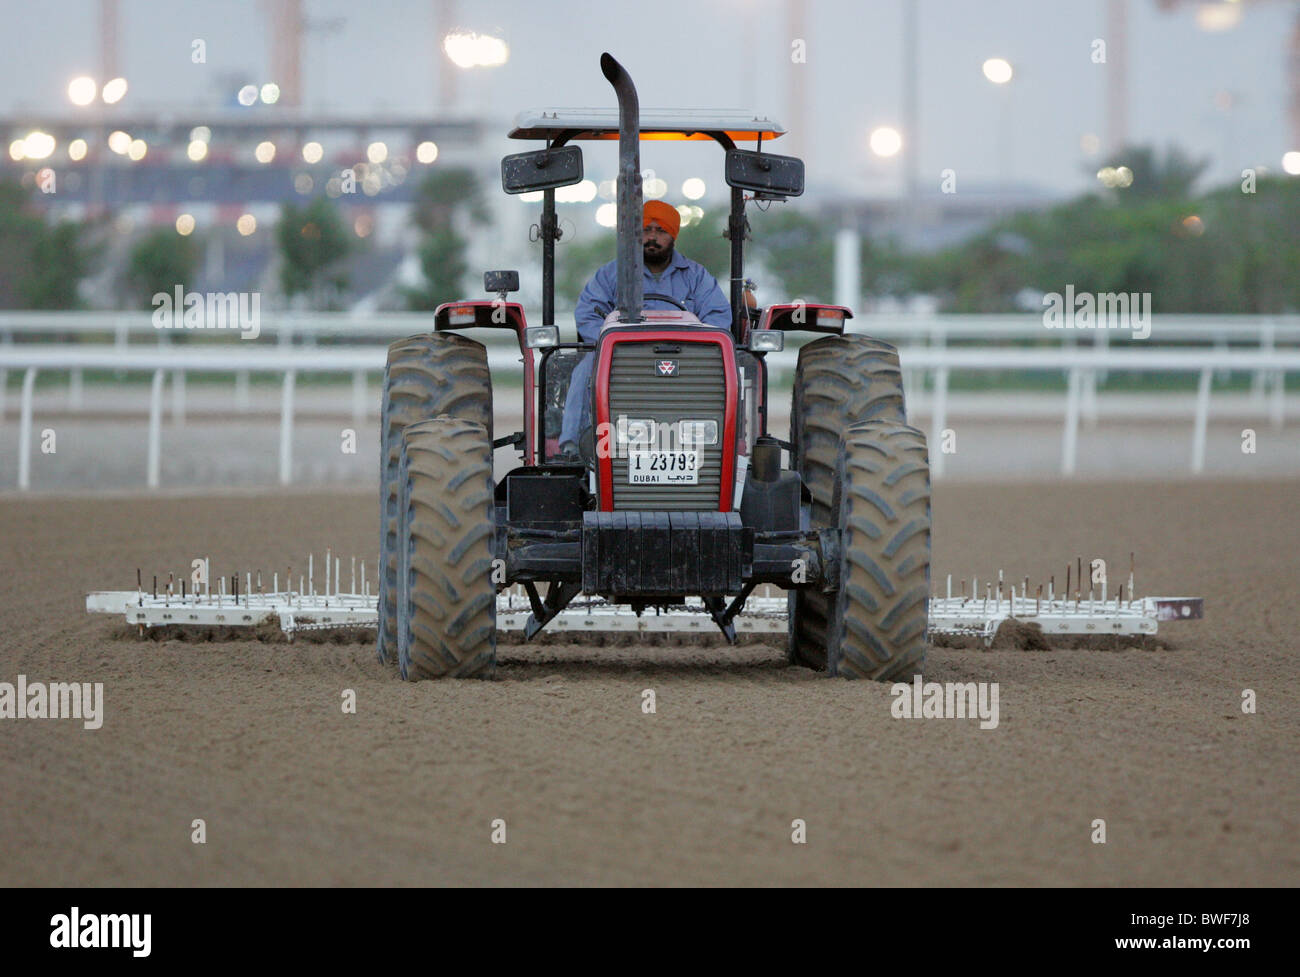 Ein Mann Horrows den Schmutz verfolgt auf der Rennbahn Nad al Sheba, Dubai, Vereinigte Arabische Emirate Stockfoto